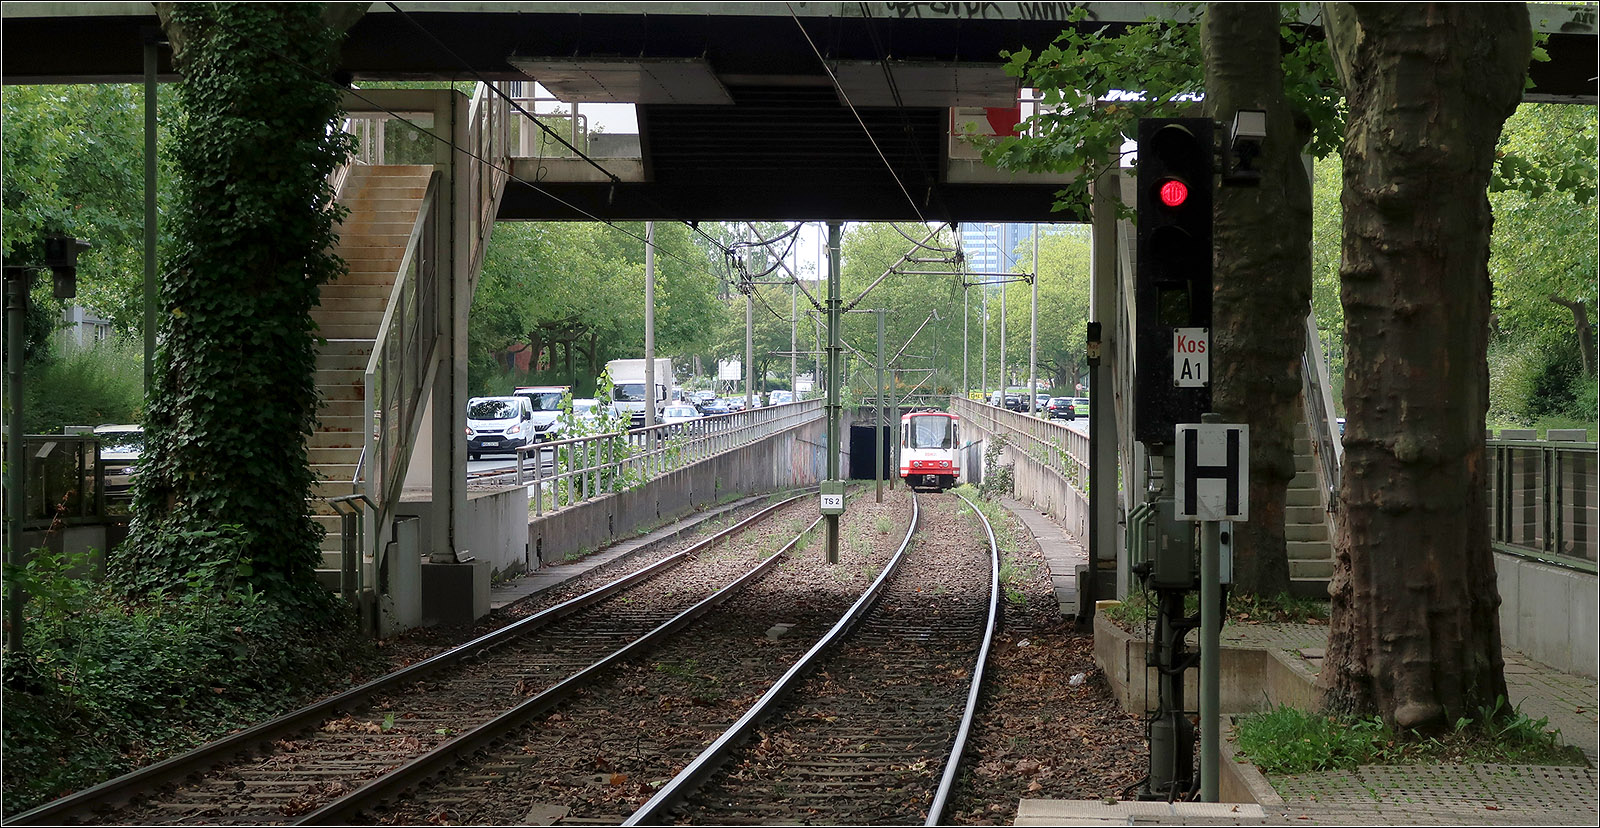 Die Dortmunder U47 im Westfalendamm - 

Kurz nach der Haltestelle Kohlgartenstraße verschwindet die U47 im Tunnel vereinigt sich an der folgenden Station Märkischen Straße mit der U41. Die Strecke nach Aplerbek wurde 1994 auf Stadtbahnbetrieb umgestellt, nachdem sie schon seit 1984 an den Tunnel I angeschlossen war und mit N8C-Wagen betrieben wurde. Zwischen Kohlgartenstraße und Hauptfriedhof liegt sie im Mittelstreifen des Westfalendammes, der Bundesstraße 1.

21.08.2023 (M)



